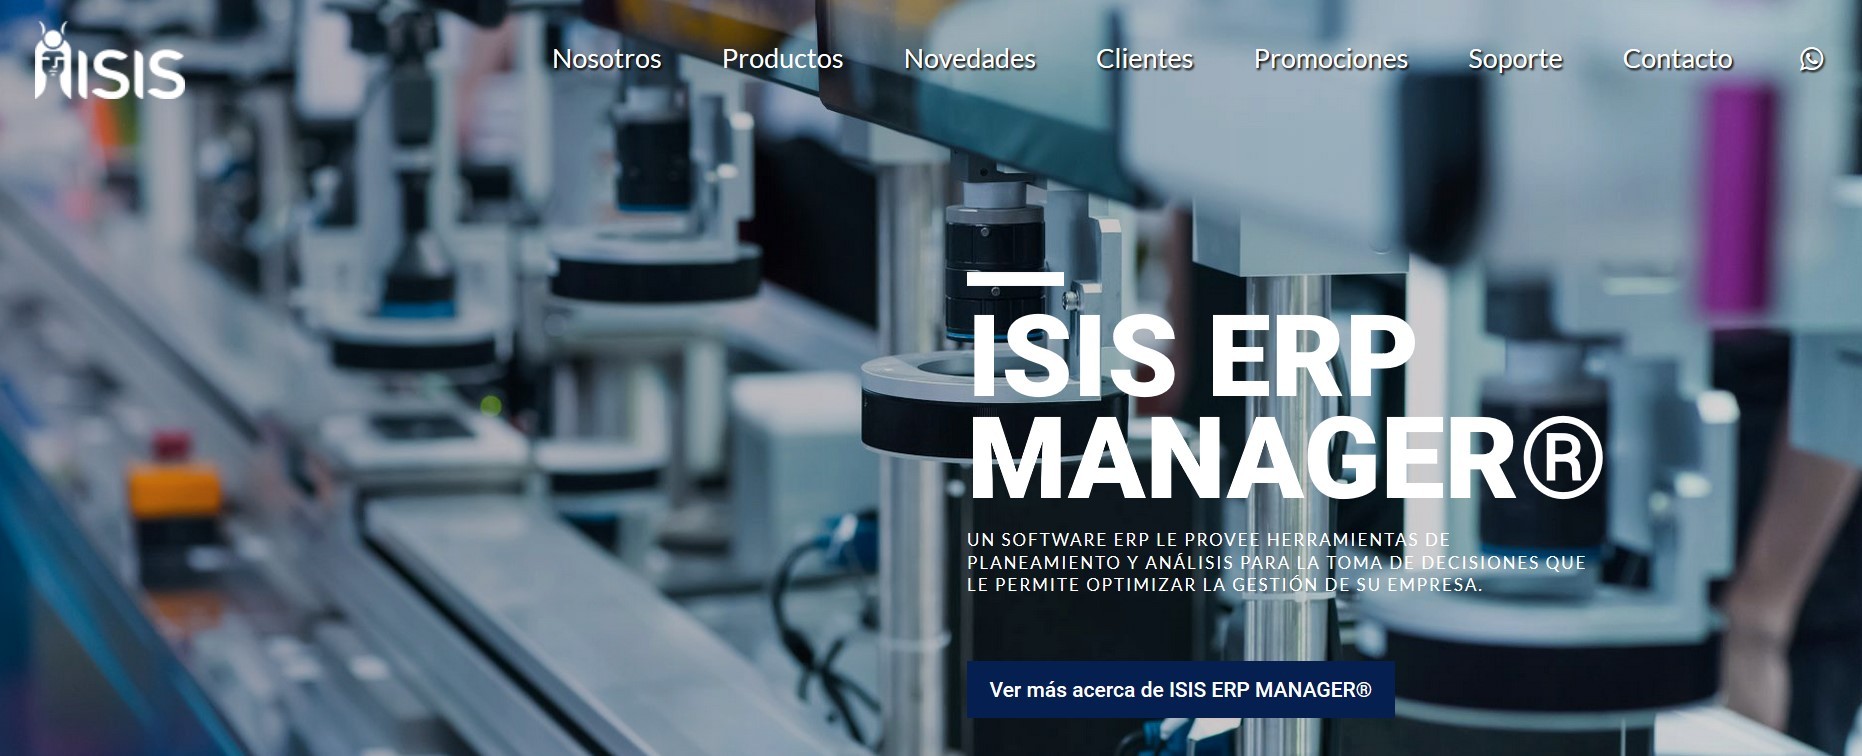 Integracion TornadoStore eCommerce con Sistema de Gestión ISIS ERP